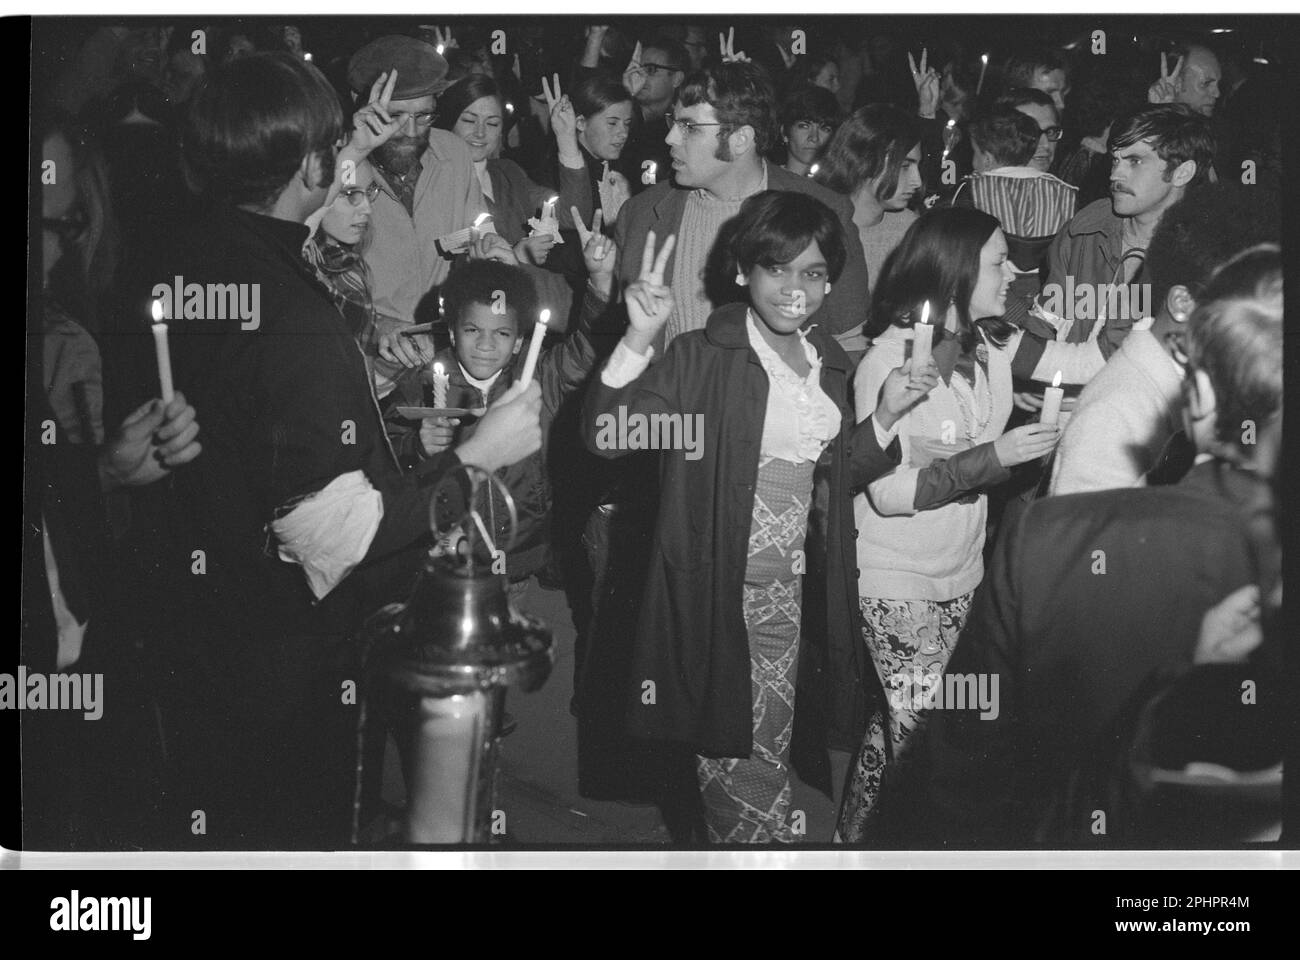 Menschenmenge, die Friedensschilder blitzte und Kerzen hielt, darunter Afroamerikaner, bei einem marsch in der Nacht zum Weißen Haus, angeführt von Coretta Scott King als Teil des Moratoriums zur Beendigung des Krieges in Vietnam, Washington, DC, am 15. Oktober 1969. Foto von Warren K Leffler/US News and World Report Magazine Kollektion) Stockfoto